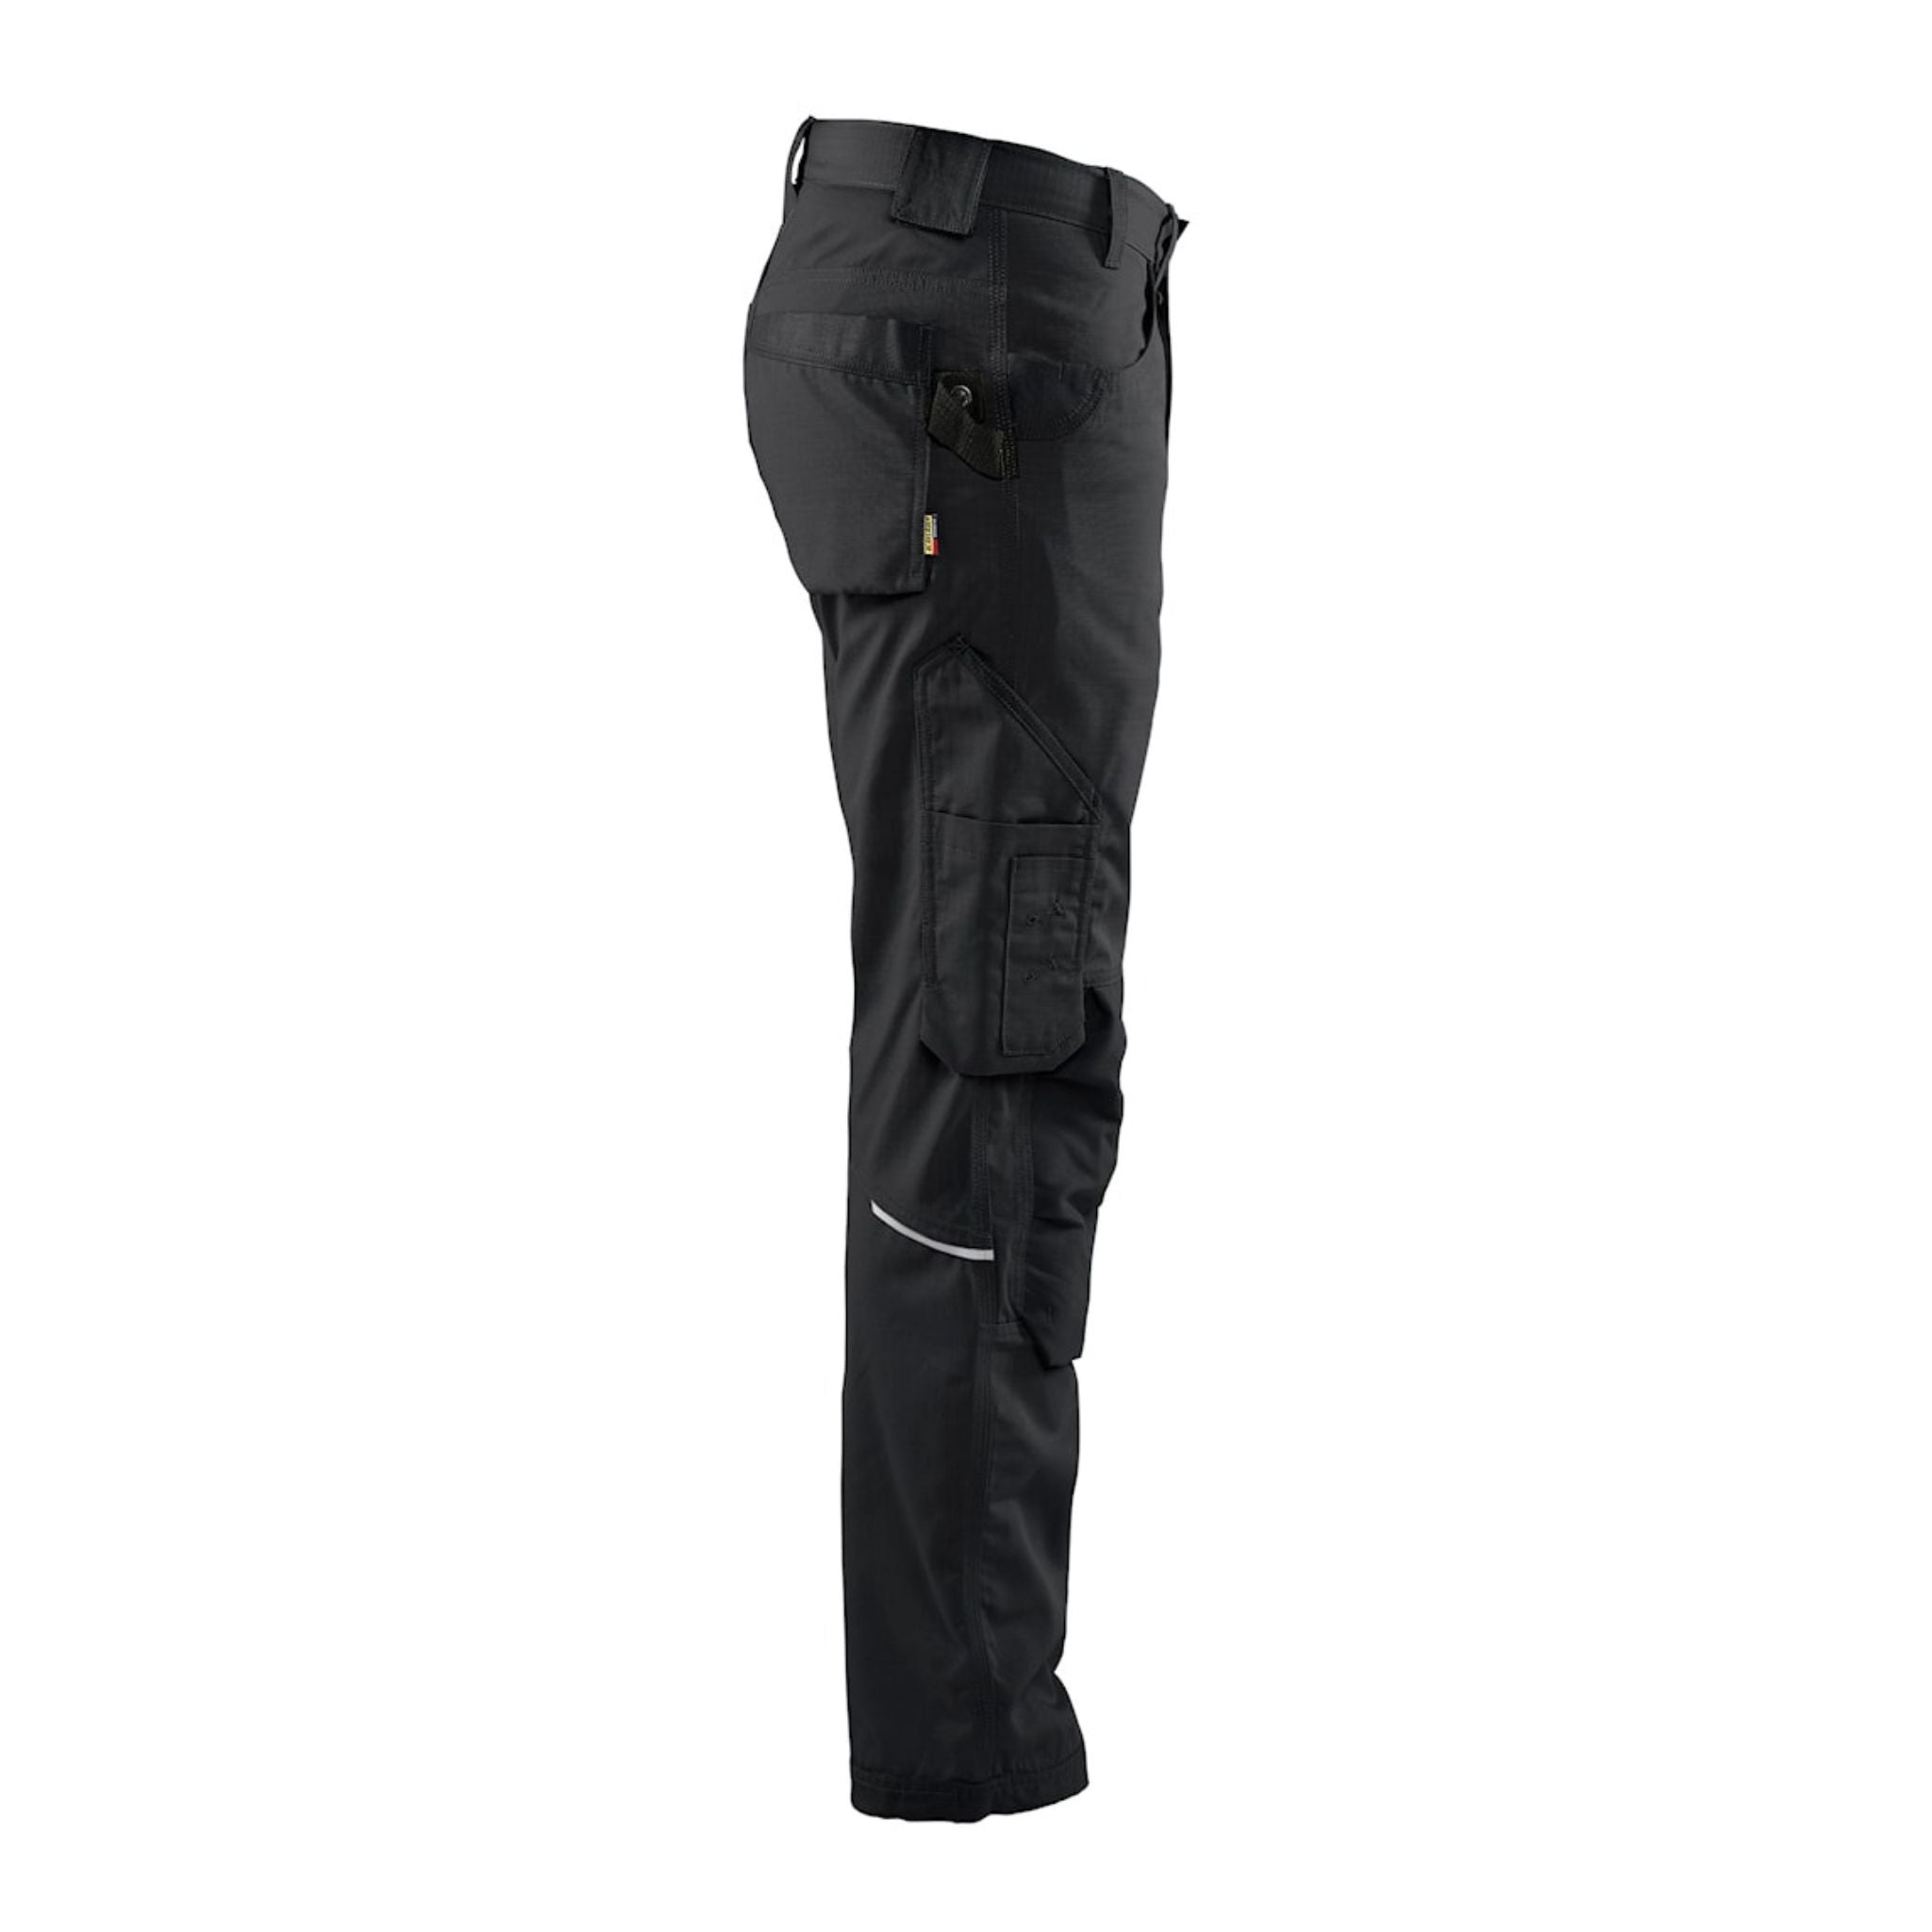 men's show black pants with leg pockets